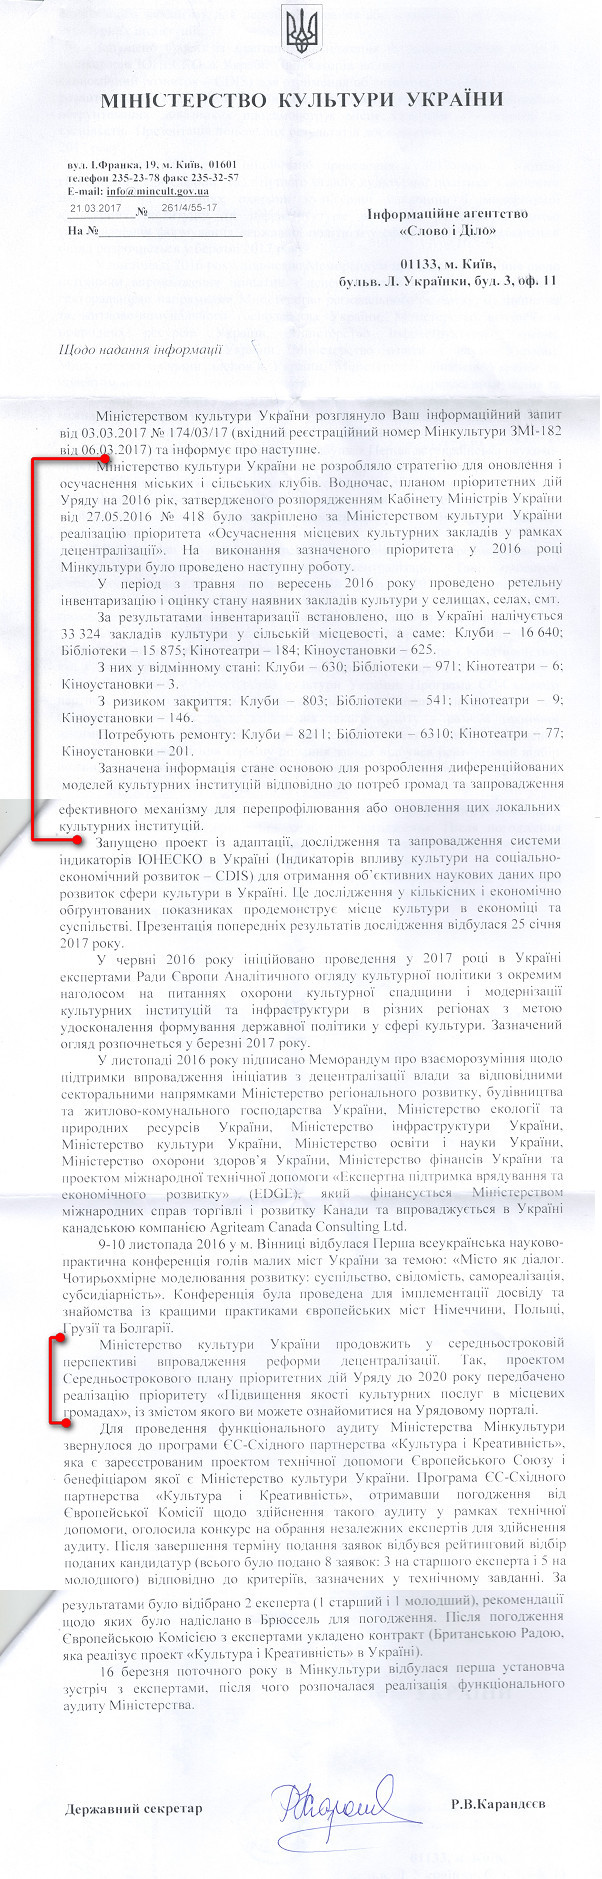 Лист Міністерства культури України від 21 березня 2017 року